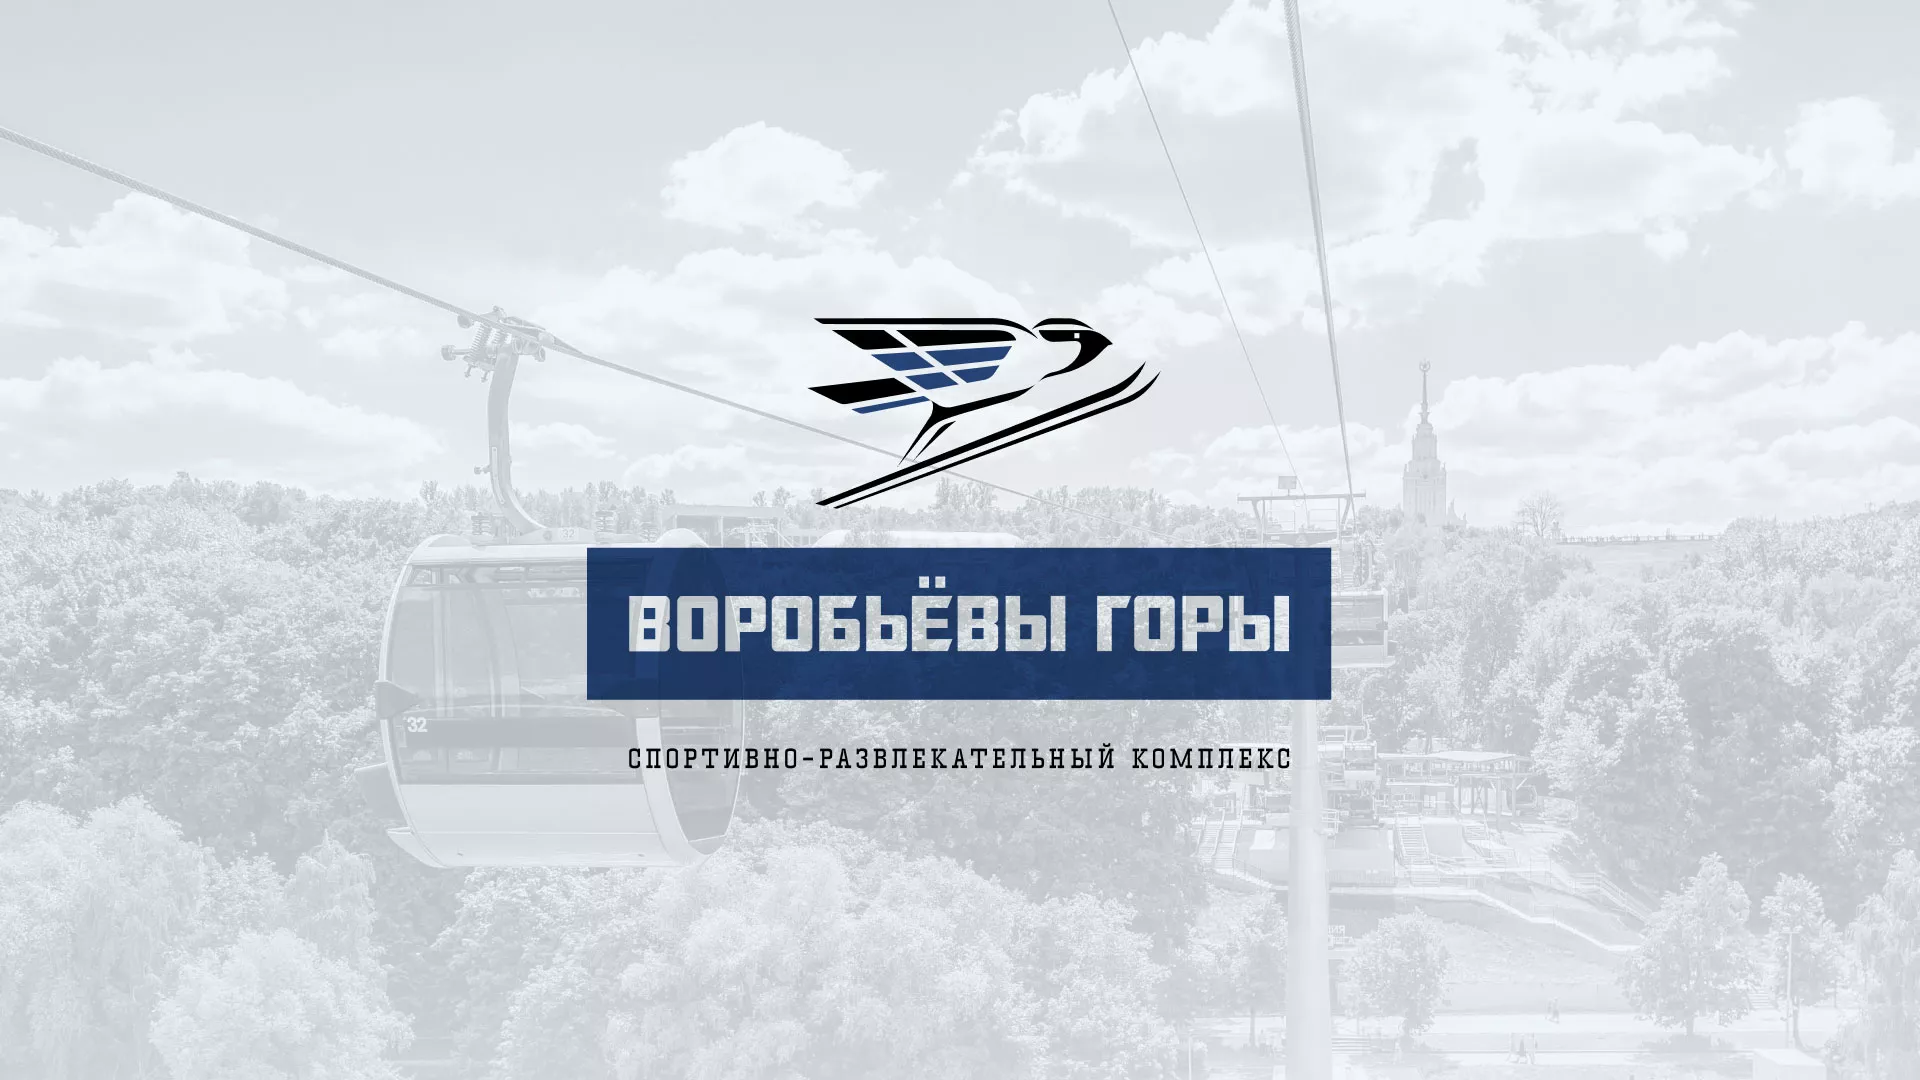 Разработка сайта в Коврове для спортивно-развлекательного комплекса «Воробьёвы горы»